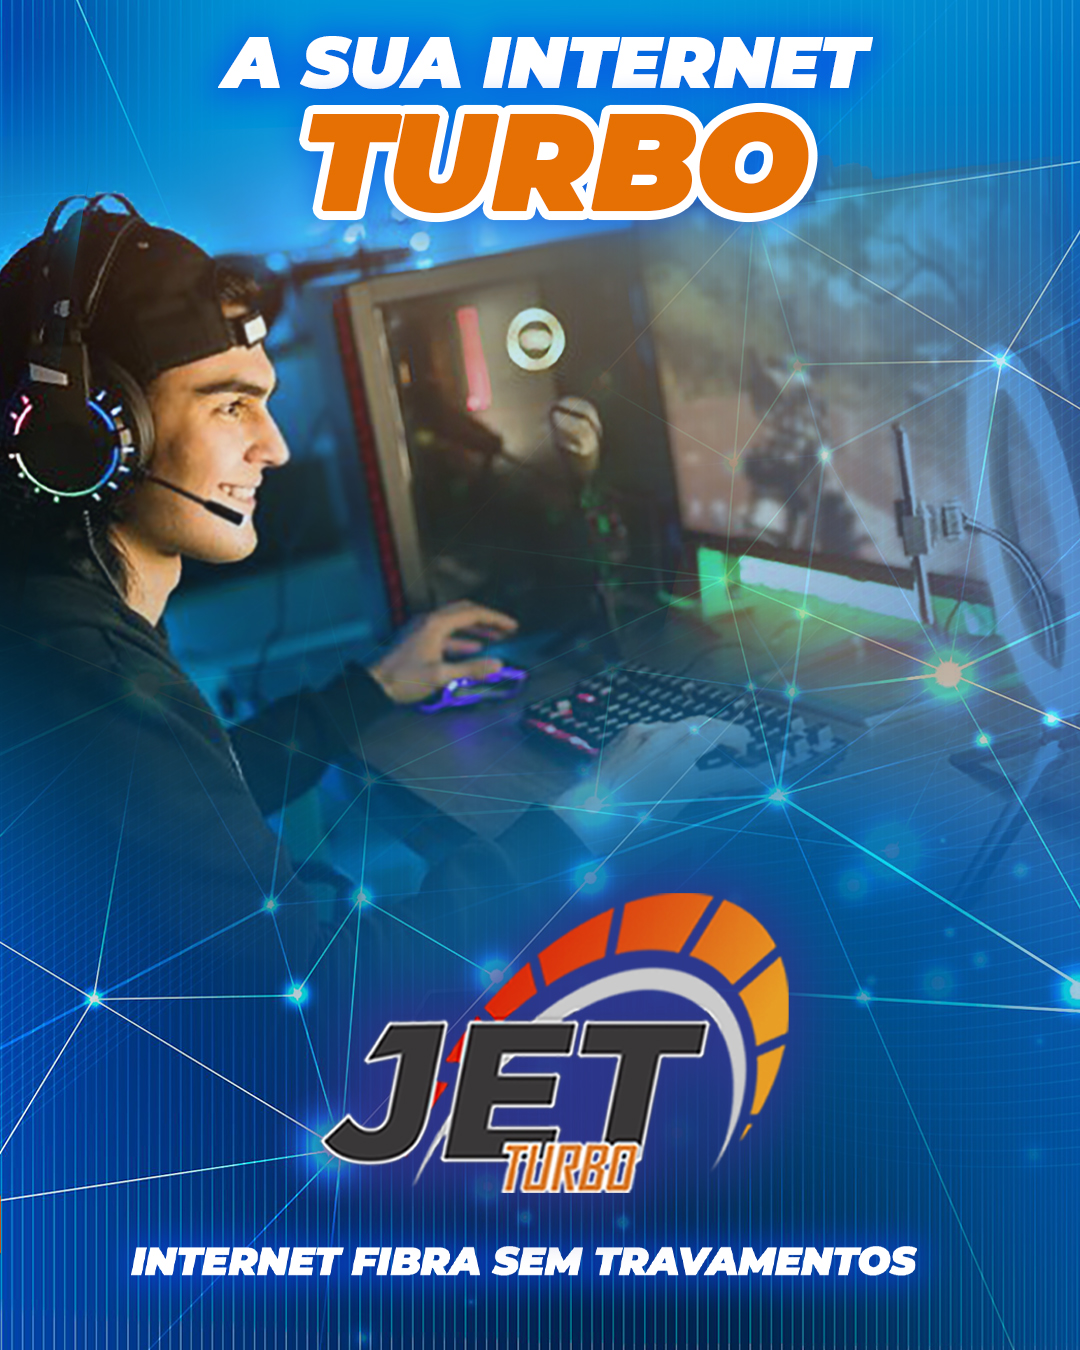 Internet Fibra em Goiânia – Jet Turbo – A sua Internet Turbinada